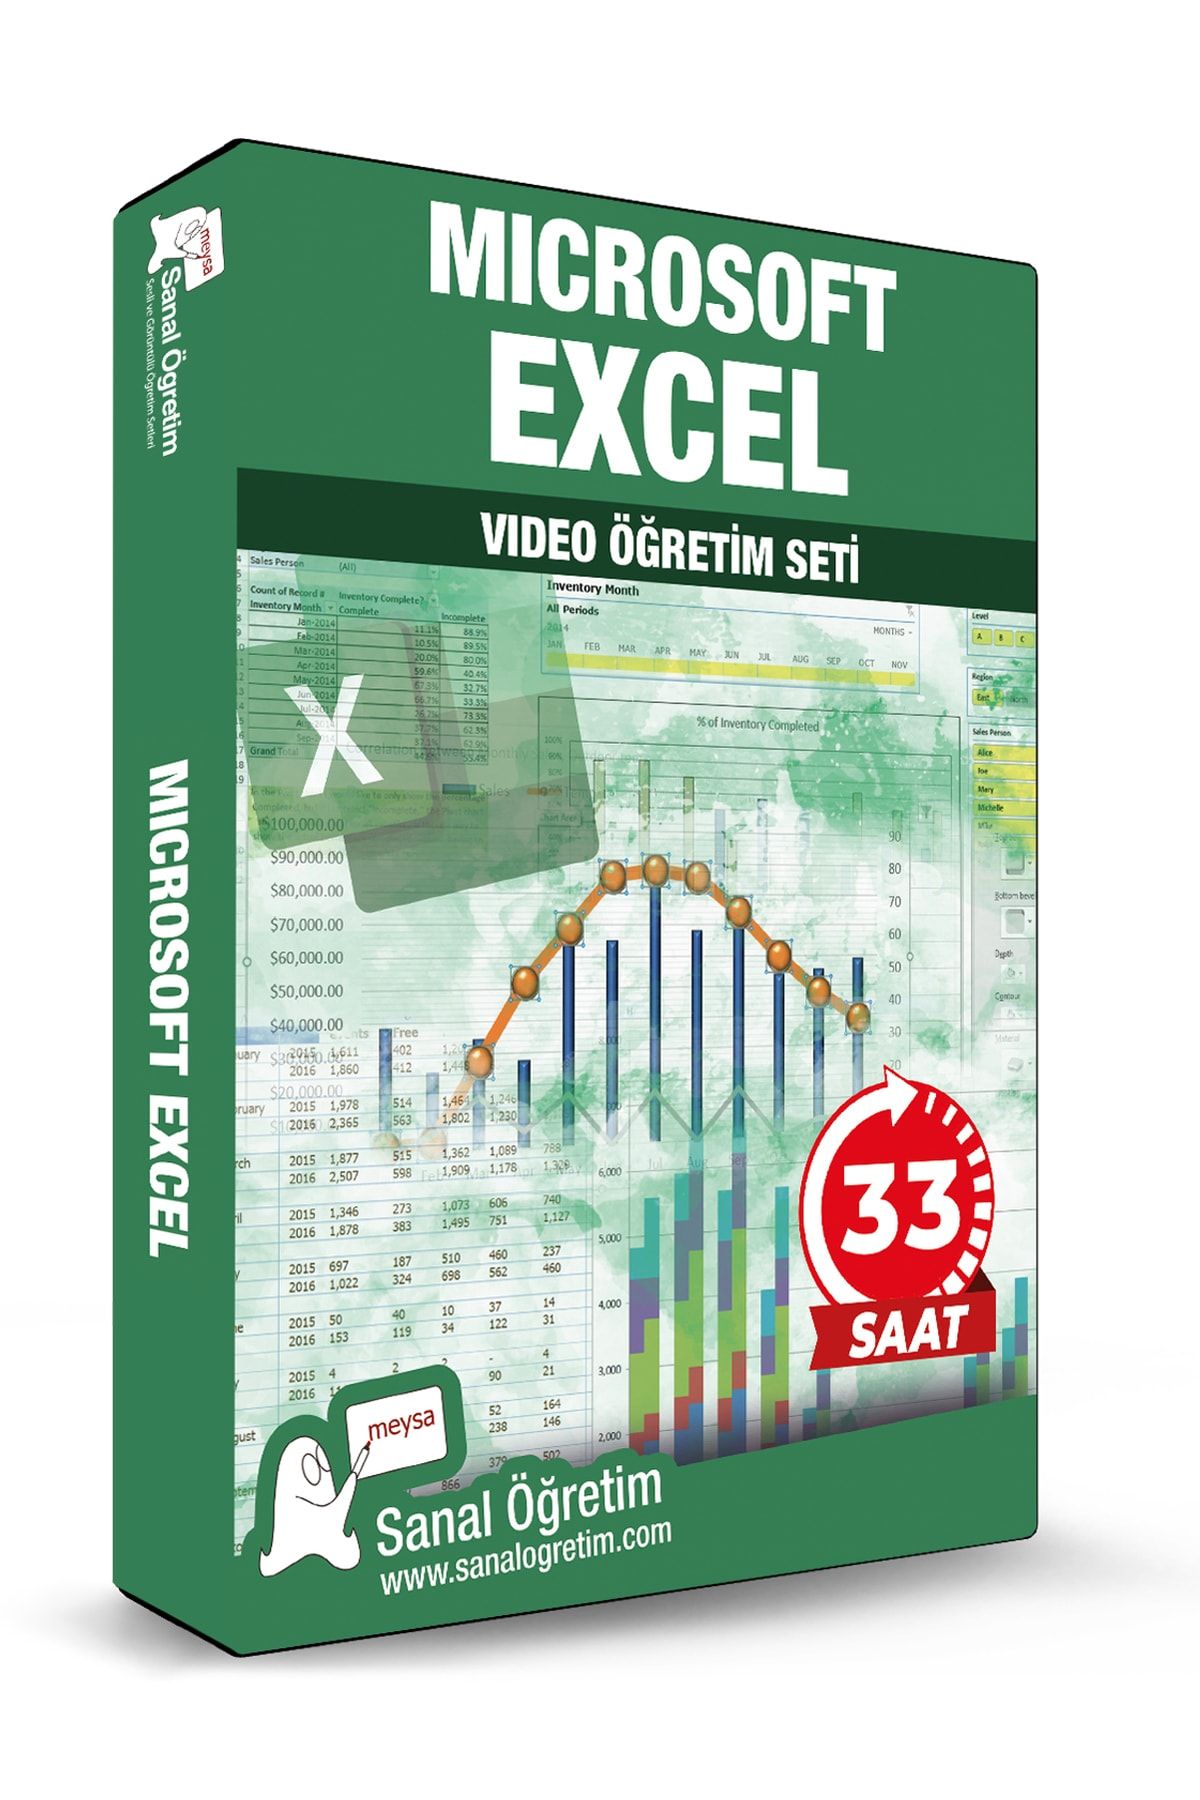 Sanal Öğretim Microsoft Excel Video Ders Eğitim Seti